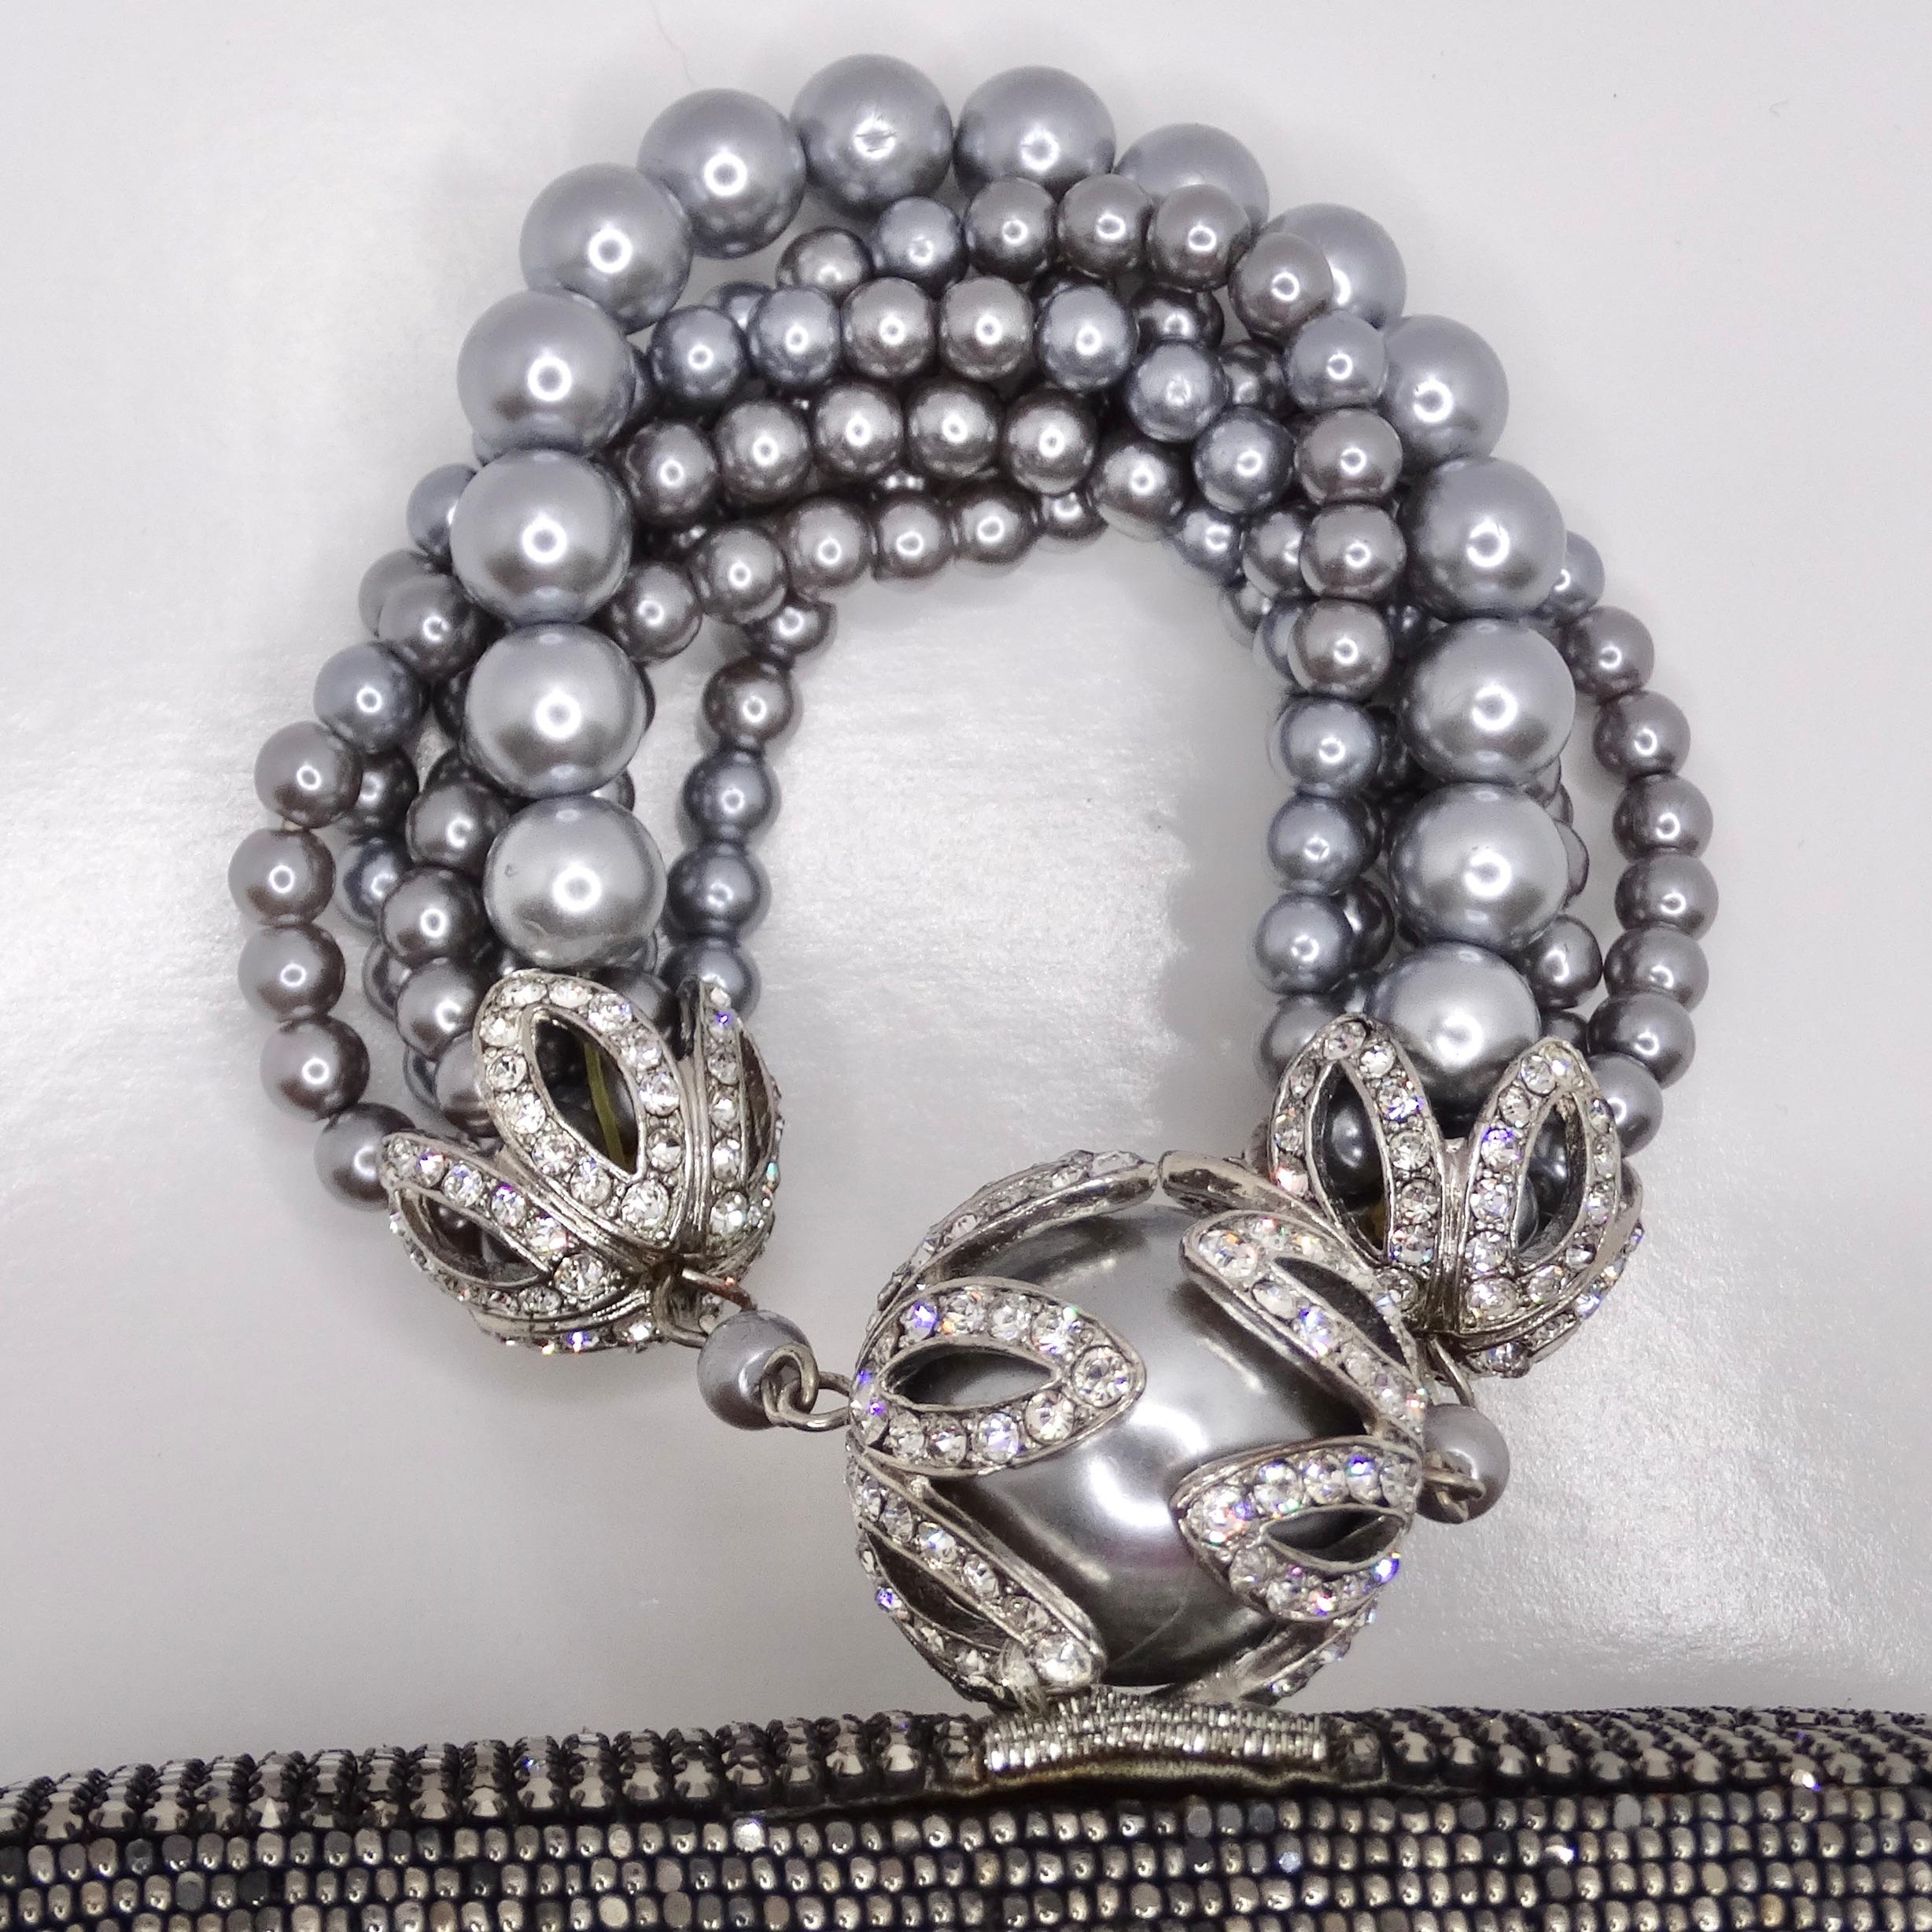 Voici la pochette ornée de cristaux et de fausses perles, un accessoire glamour et élégant qui respire la sophistication intemporelle. Cette pochette classique arrondie est dotée d'une enveloppe rigide recouverte d'une pléthore d'embellissements en